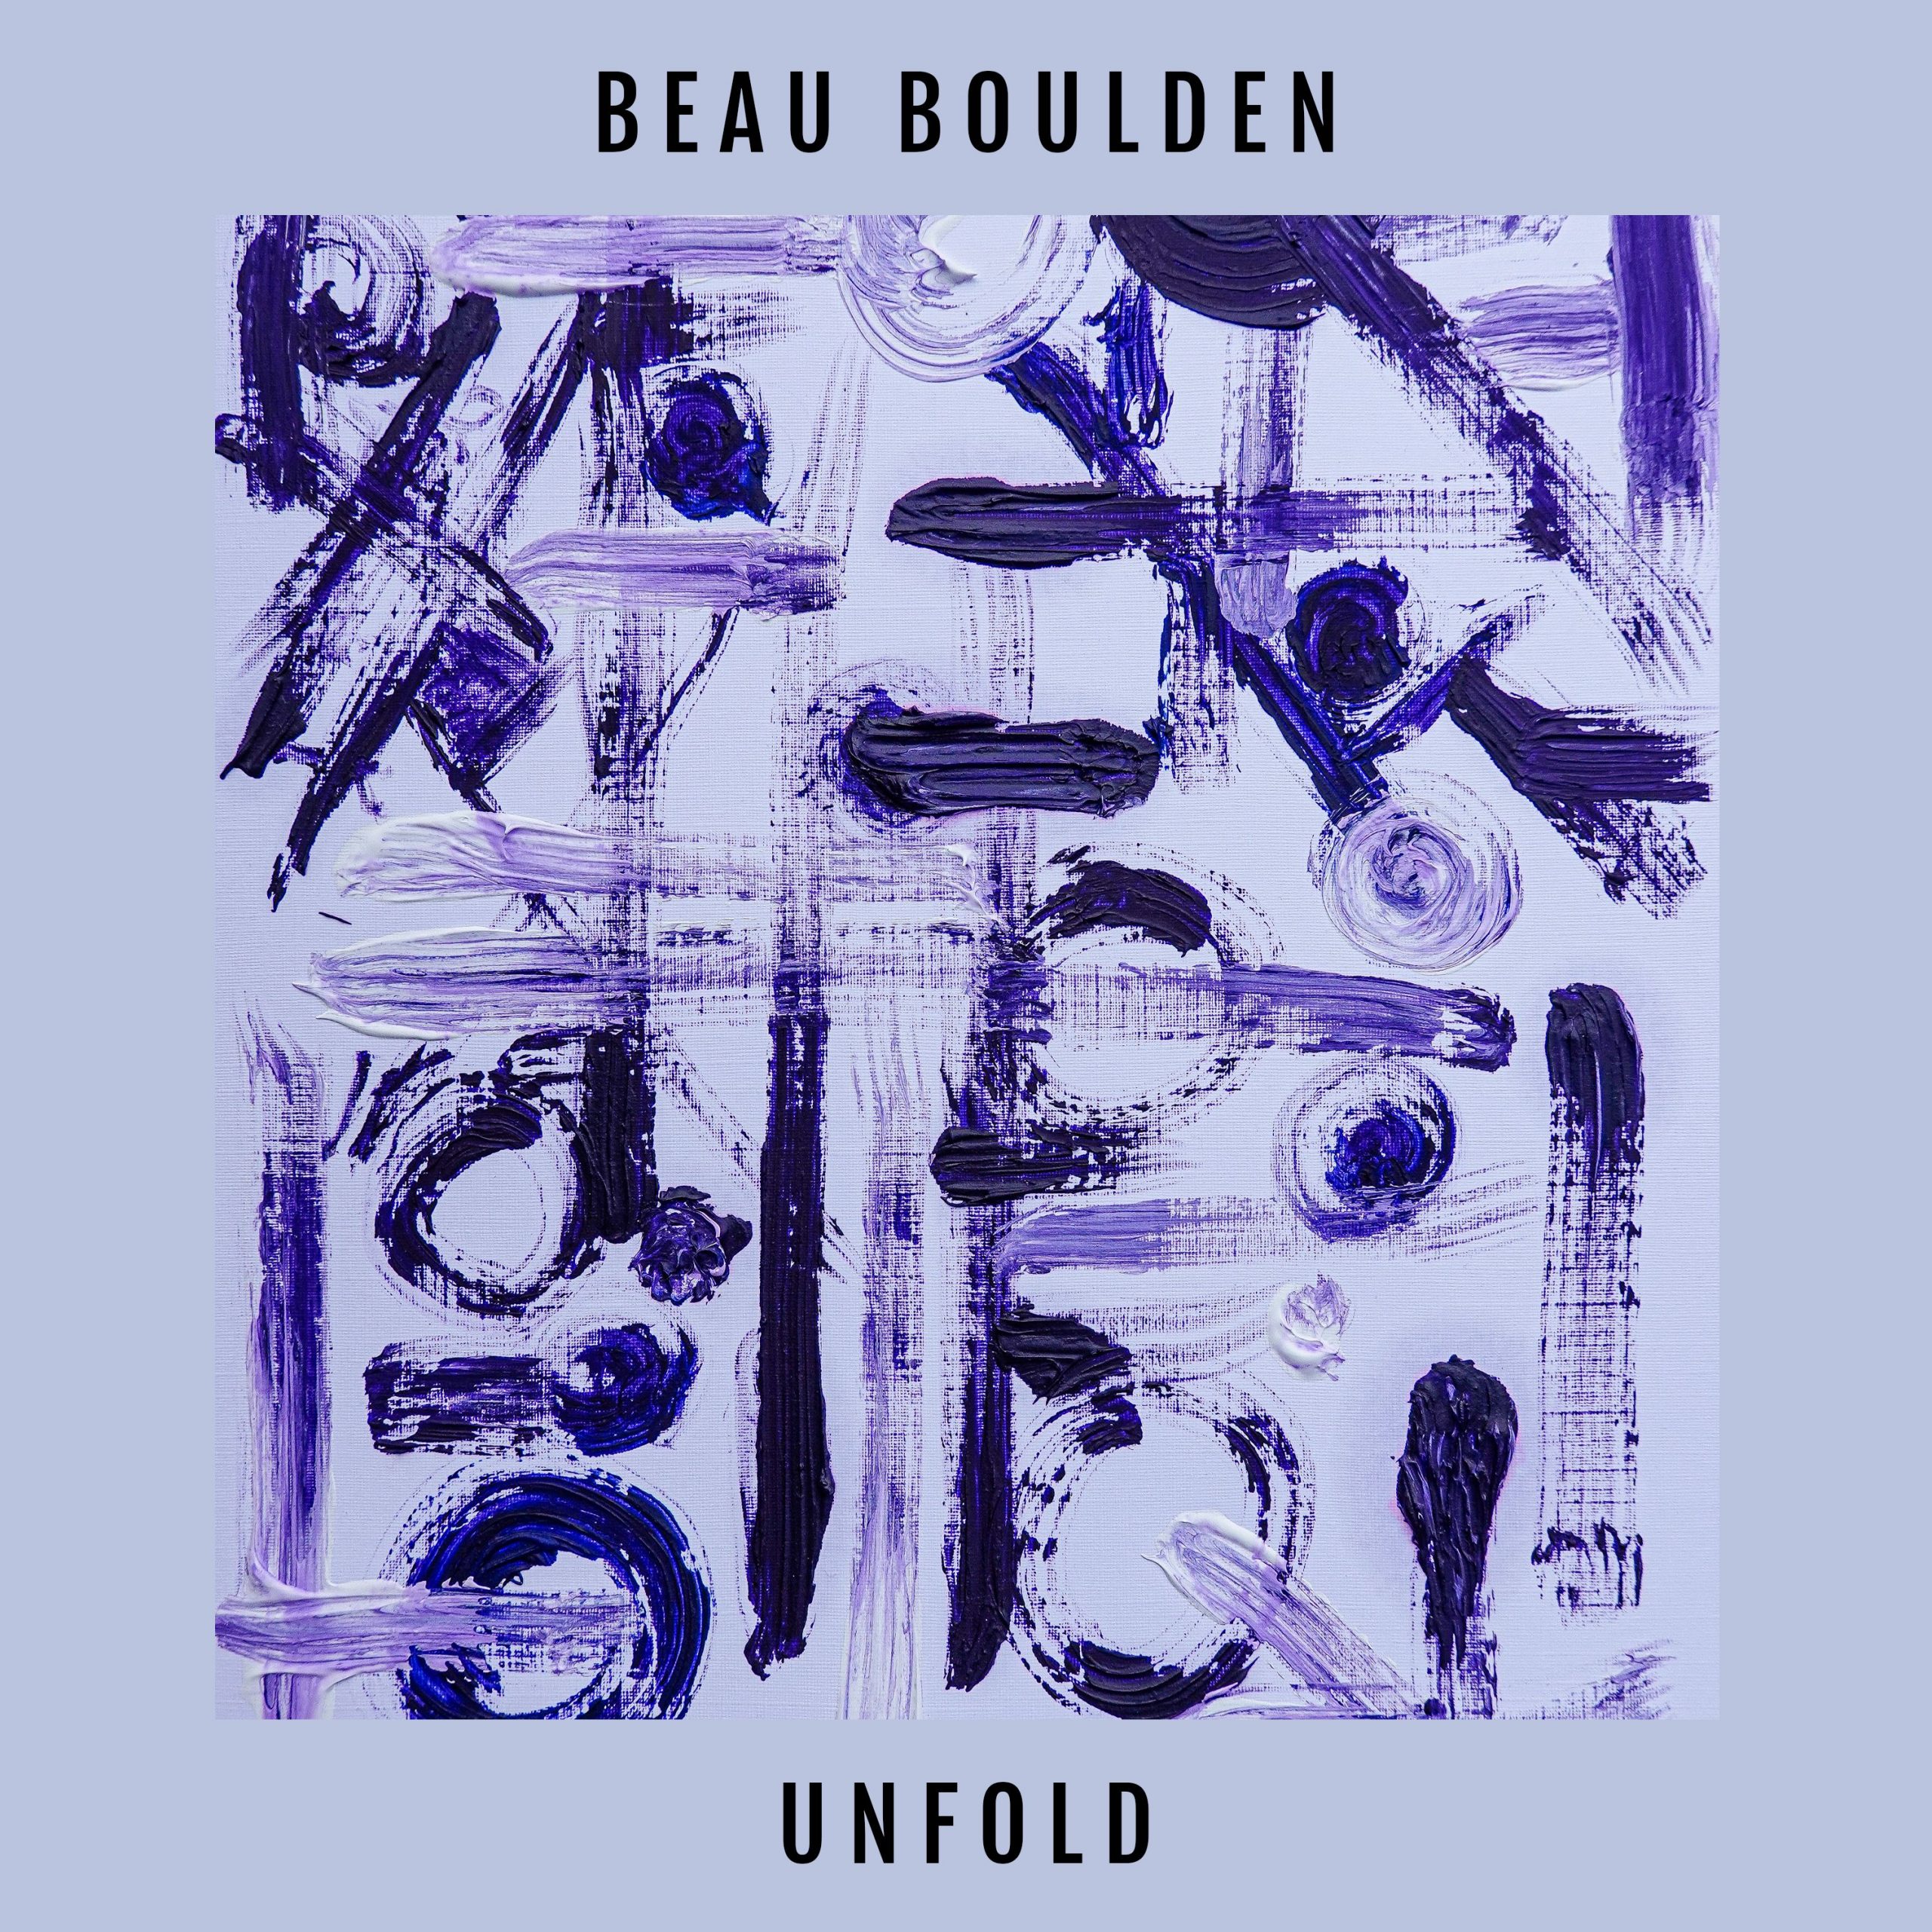 unfold - beau boulden - uk - indie - indie music - indie pop - indie rock - indie folk - new music - music blog - wolf in a suit - wolfinasuit - wolf in a suit blog - wolf in a suit music blog